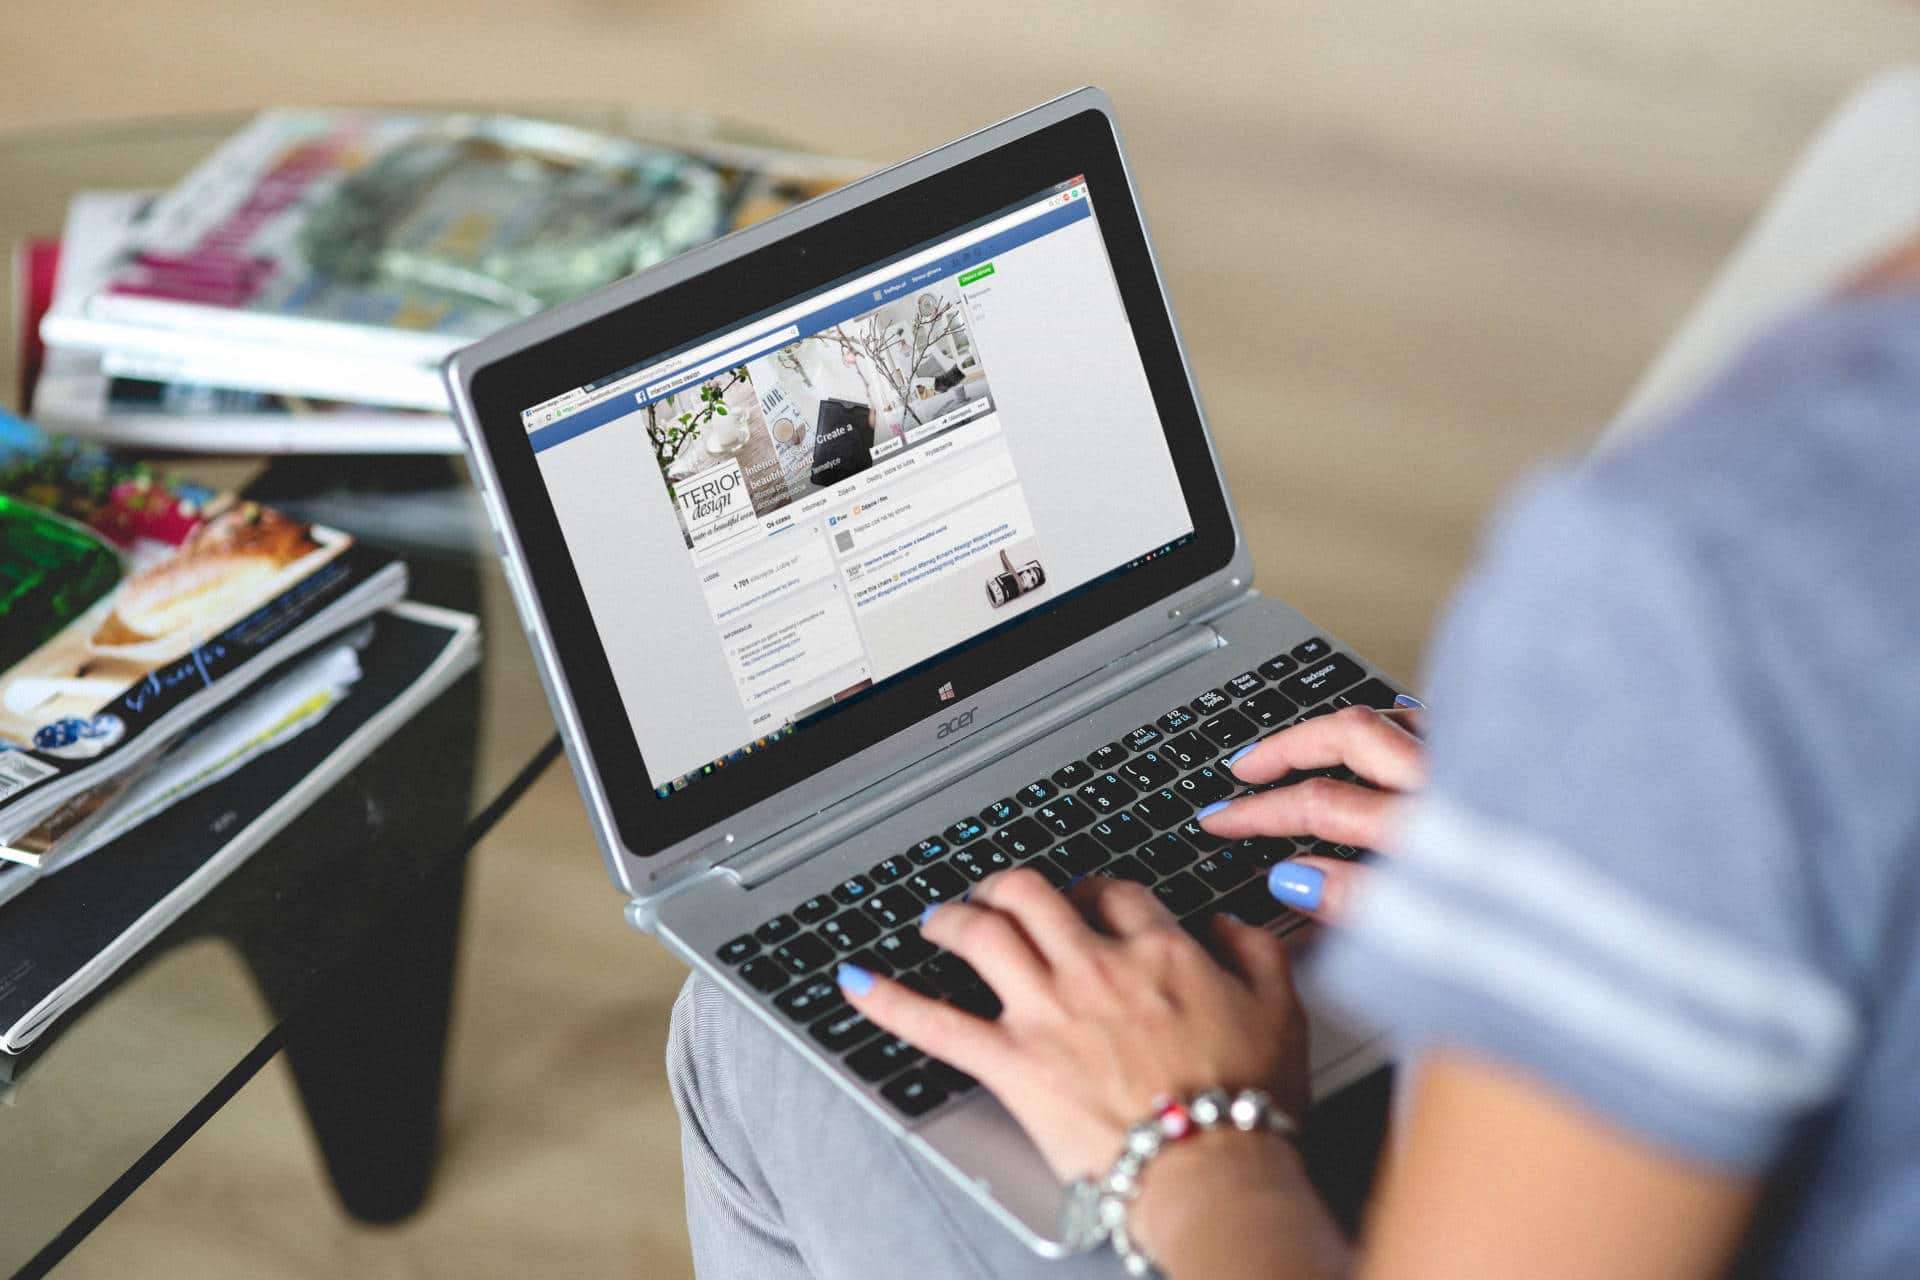 A woman creates a Facebook post on a laptop